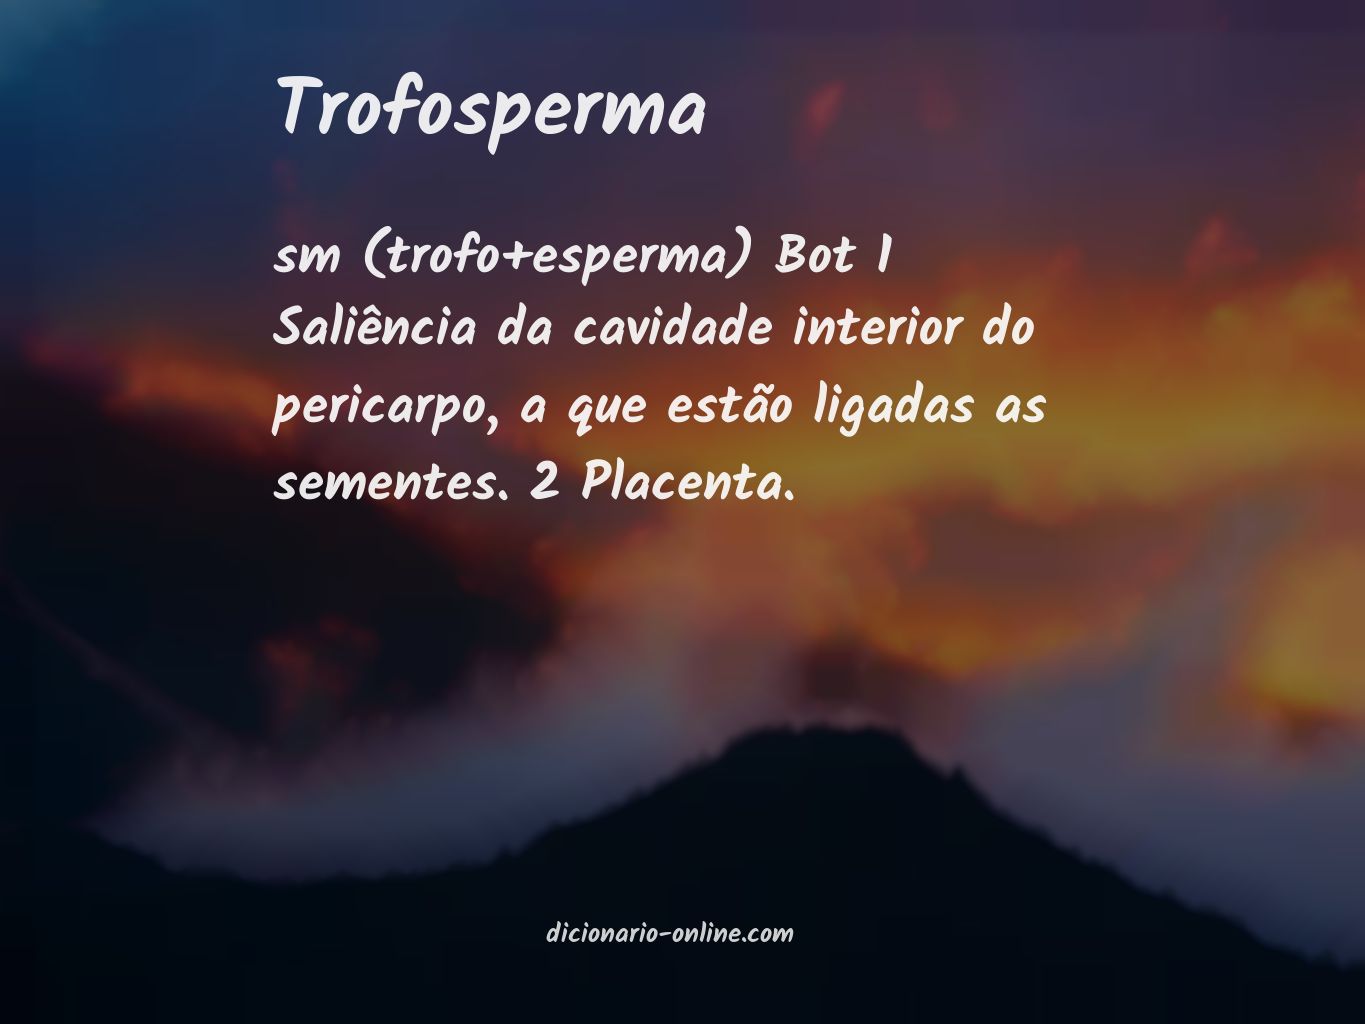 Significado de trofosperma